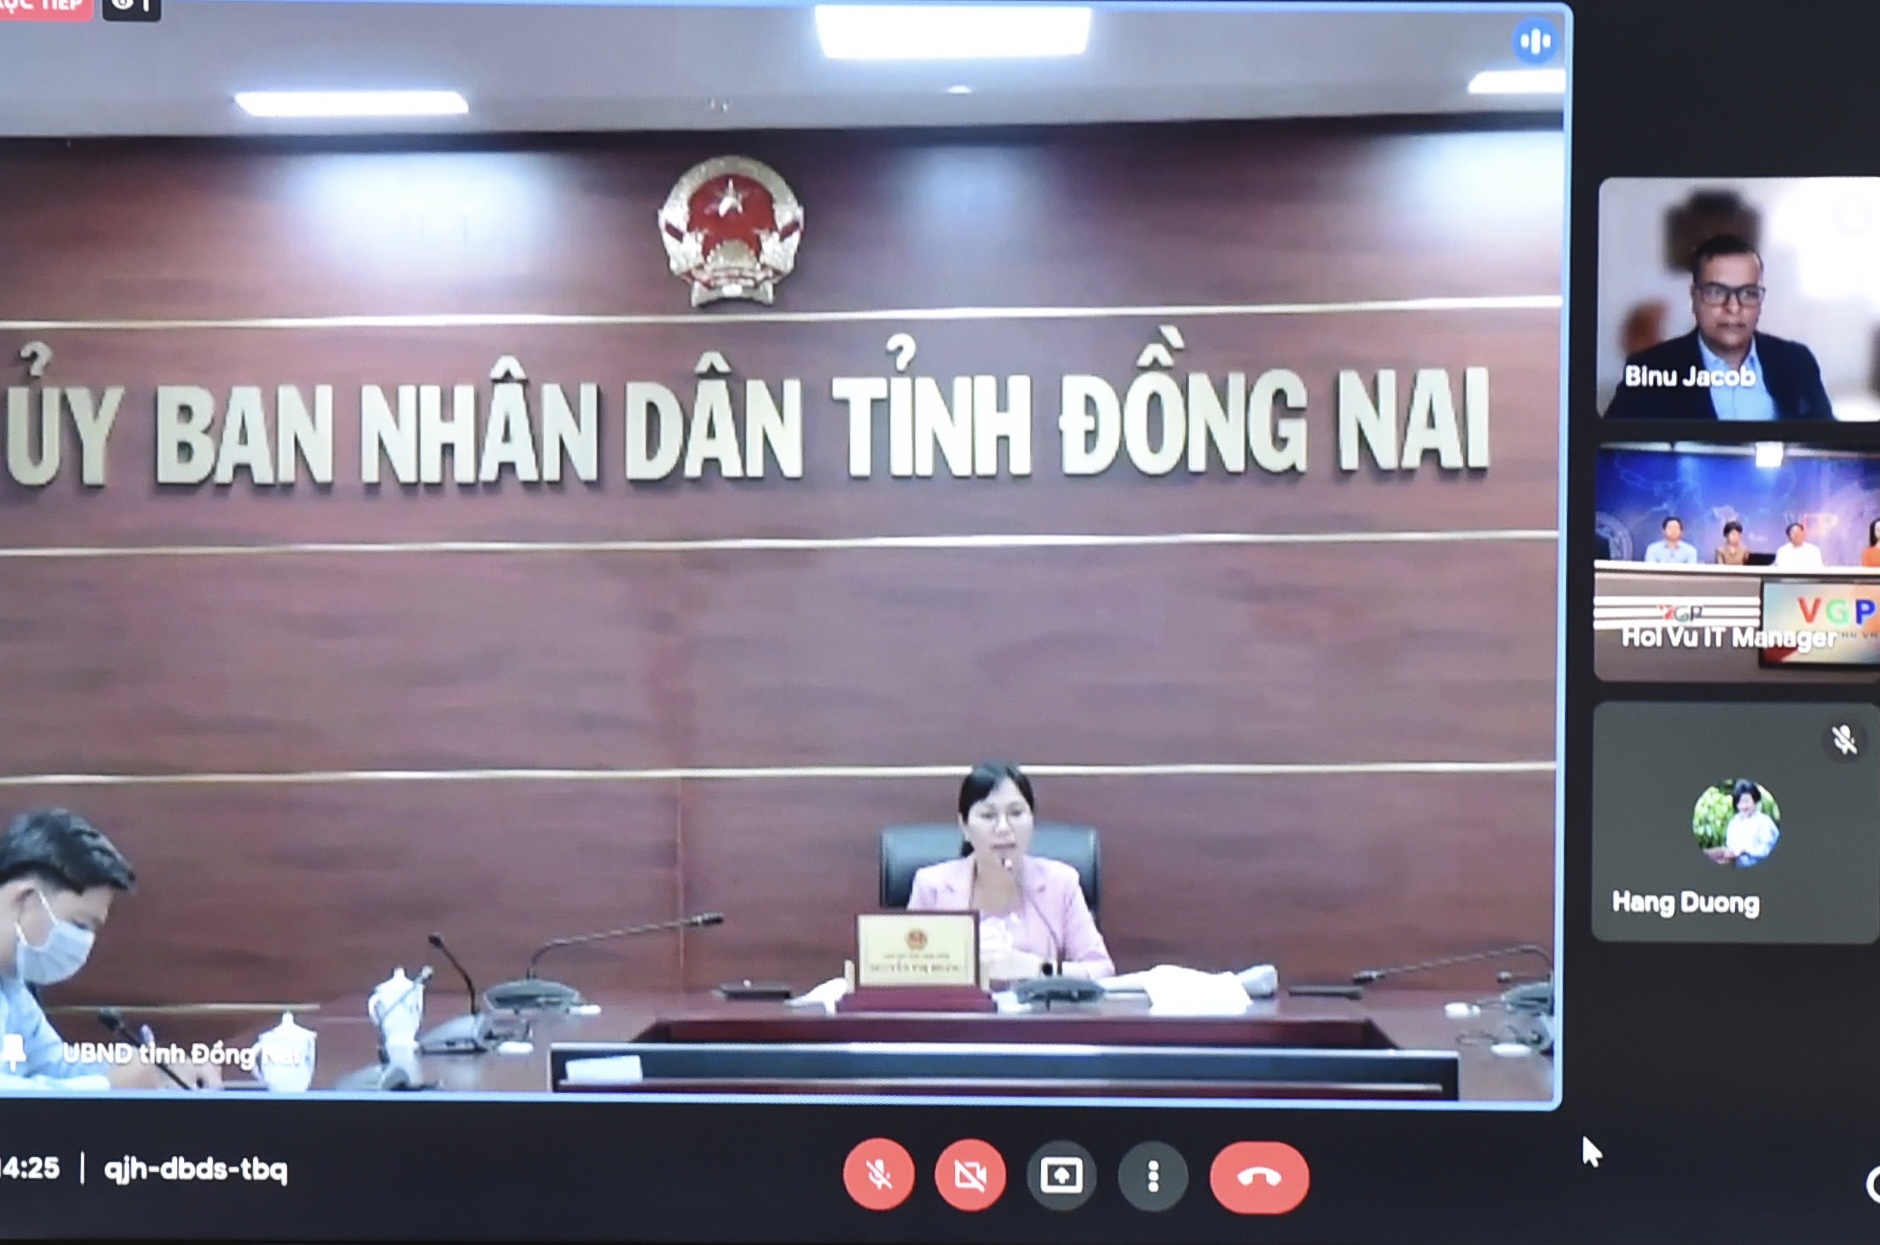 Phó Chủ tịch UBND tỉnh Đồng Nai Nguyễn Thị Hoàng: Chúng tôi lắng nghe các khó khăn cũng như kiến nghị của doanh nghiệp